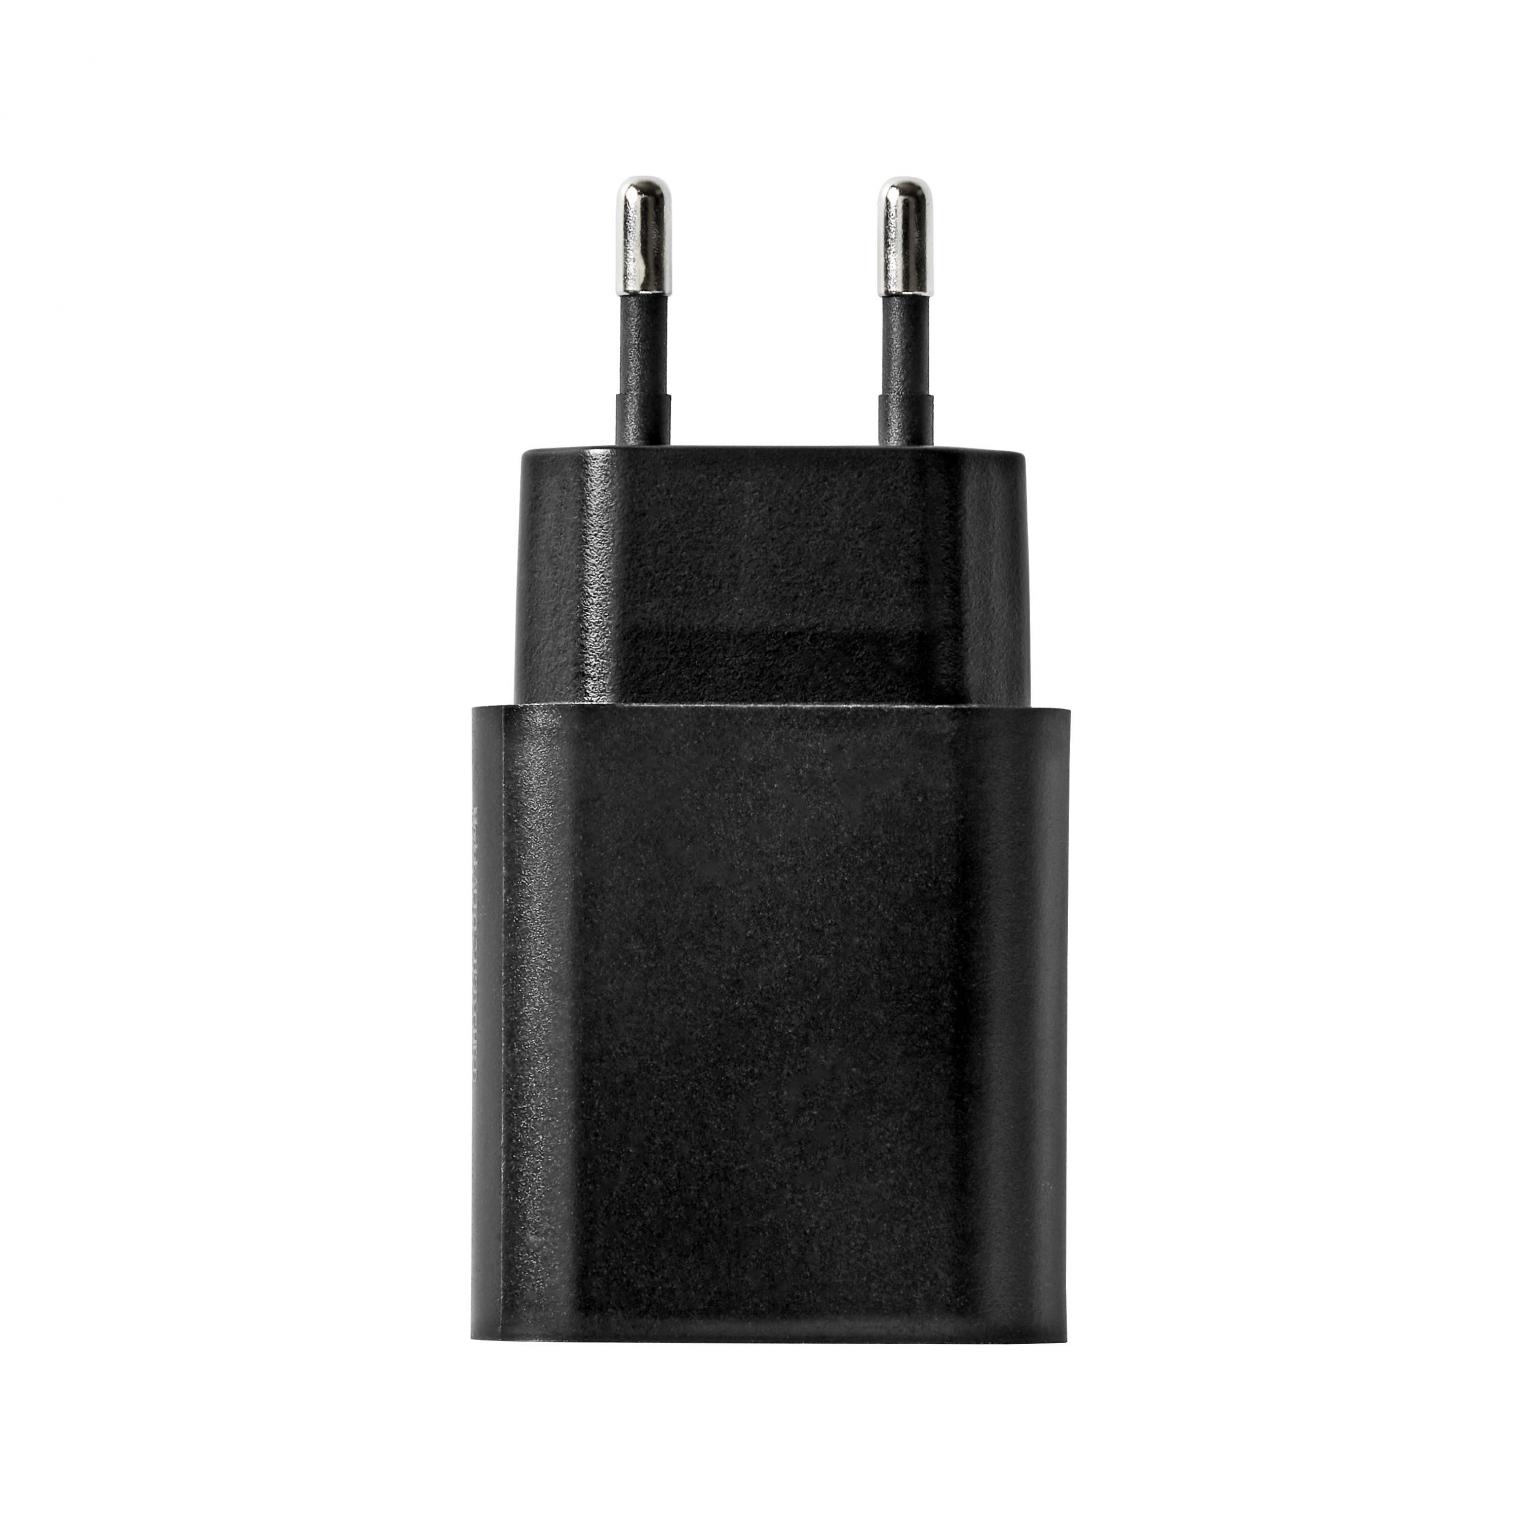 USB A oplader - 2400 mA - Allteq